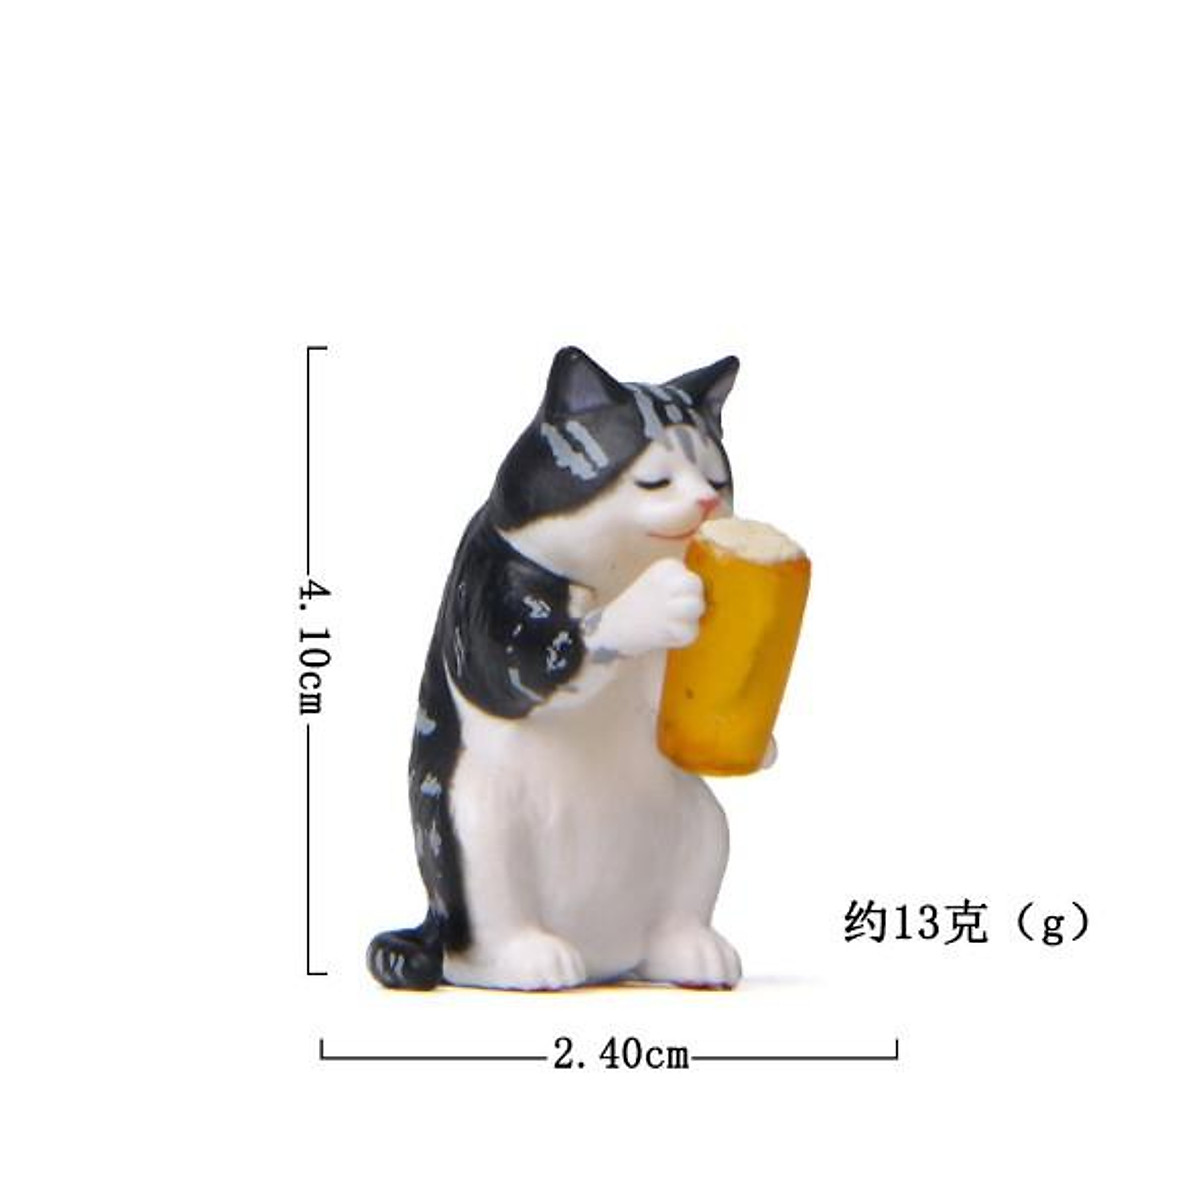 Mua Bộ mô hình mèo uống bia hài hước dễ thương cho các bạn làm ...